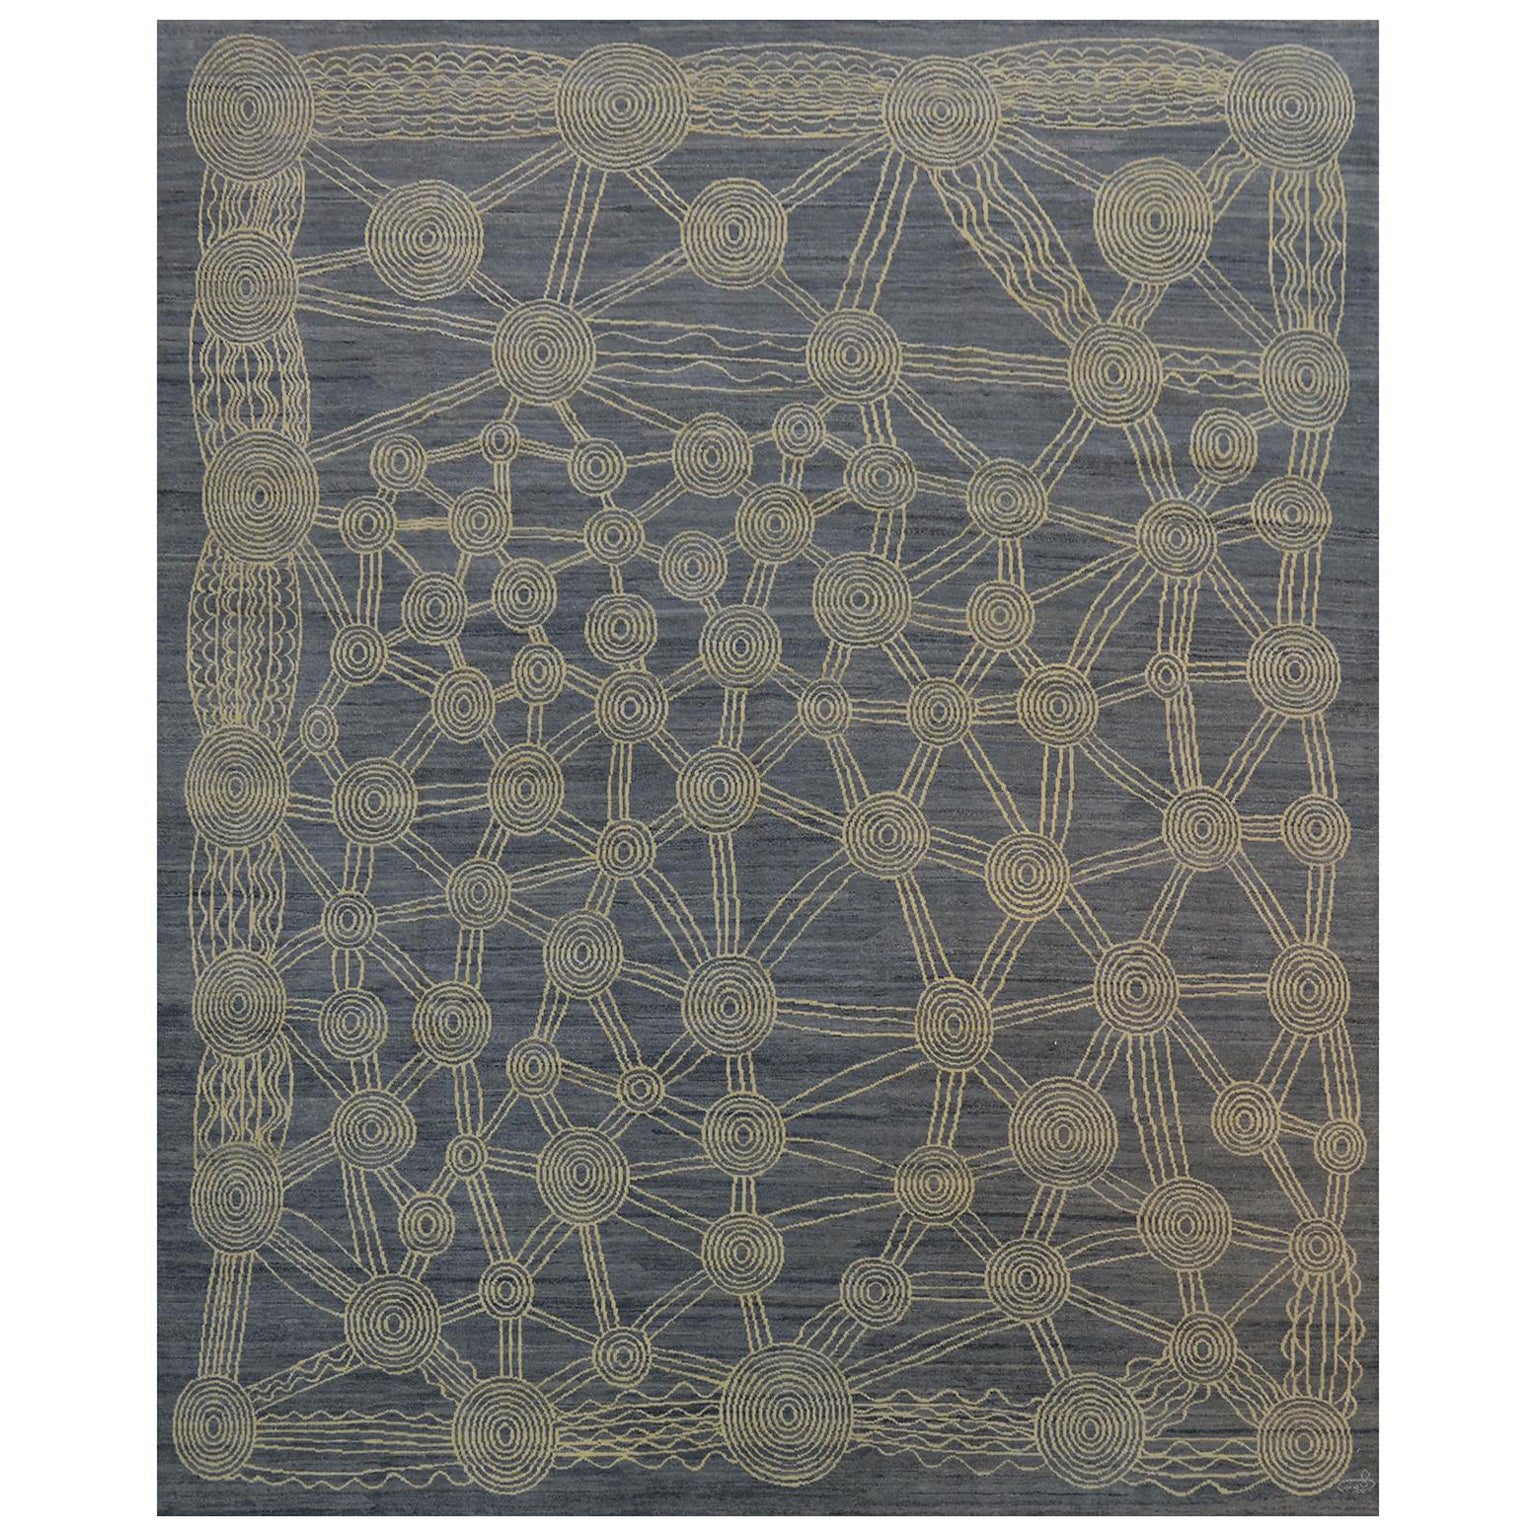 Orley Shabahang "Canberra" Tapis persan contemporain en gris et crème, 8' x 10'.